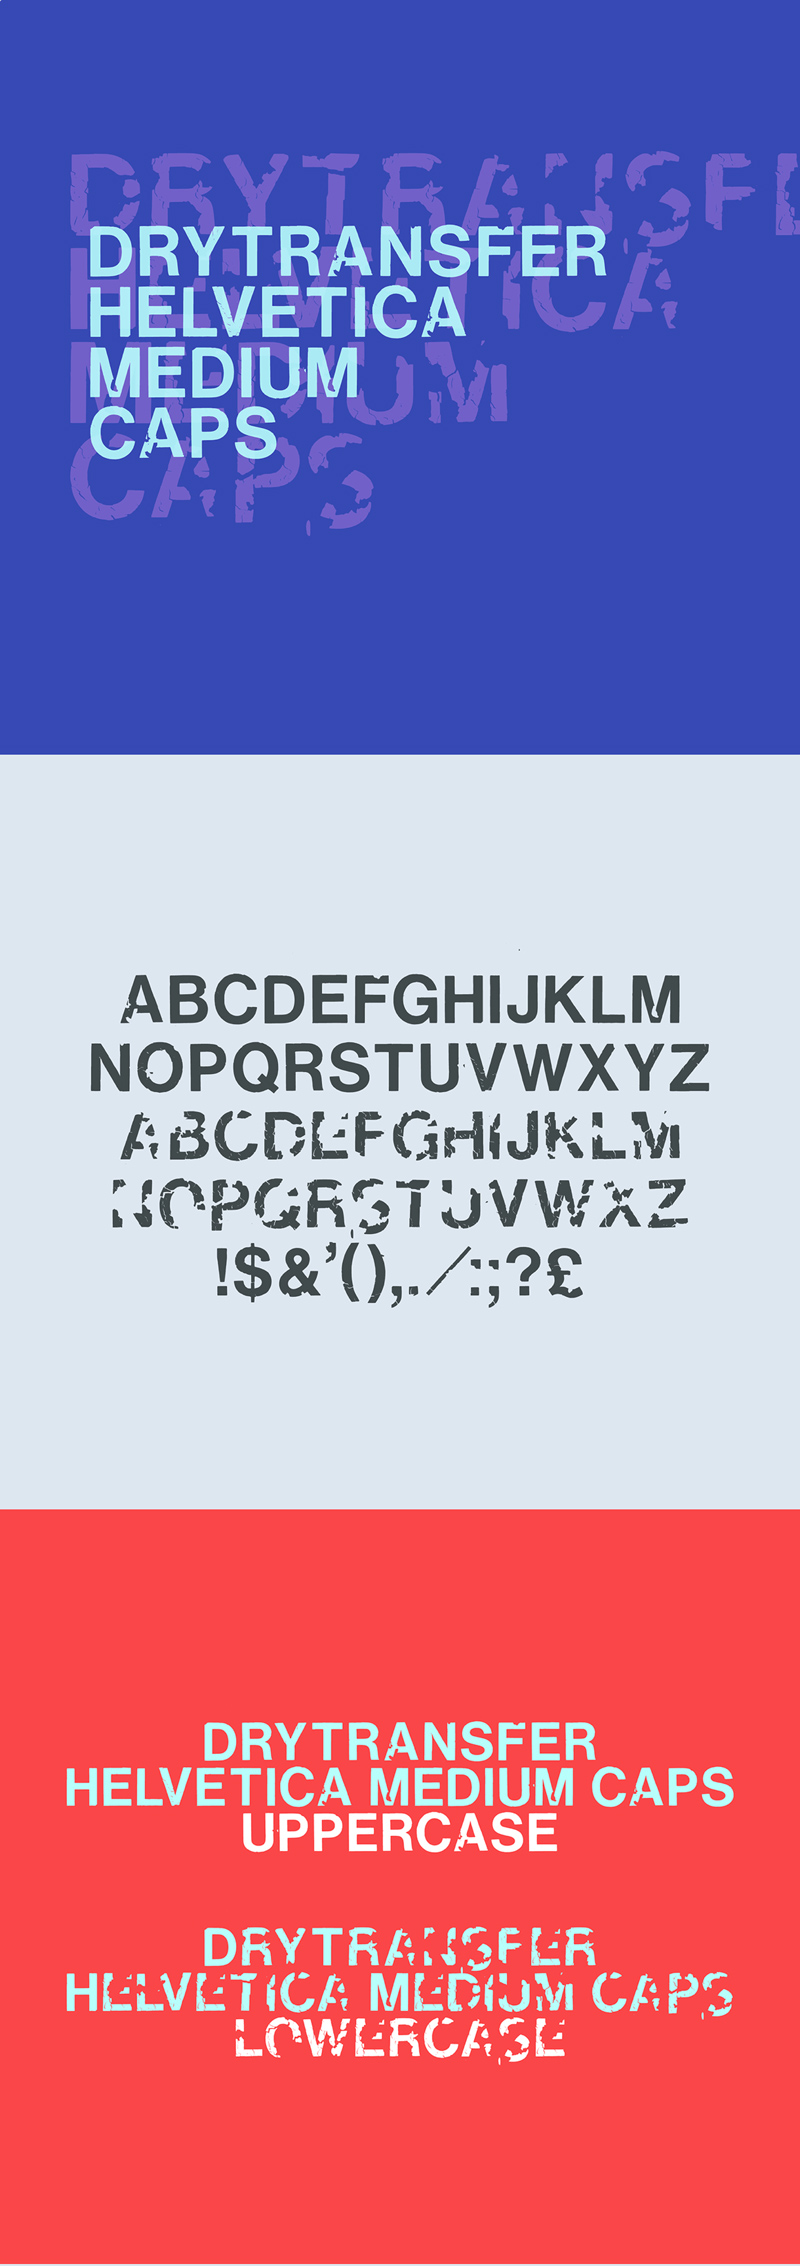 Tipo LRC - Capas medianas de DryTransfer Helvetica